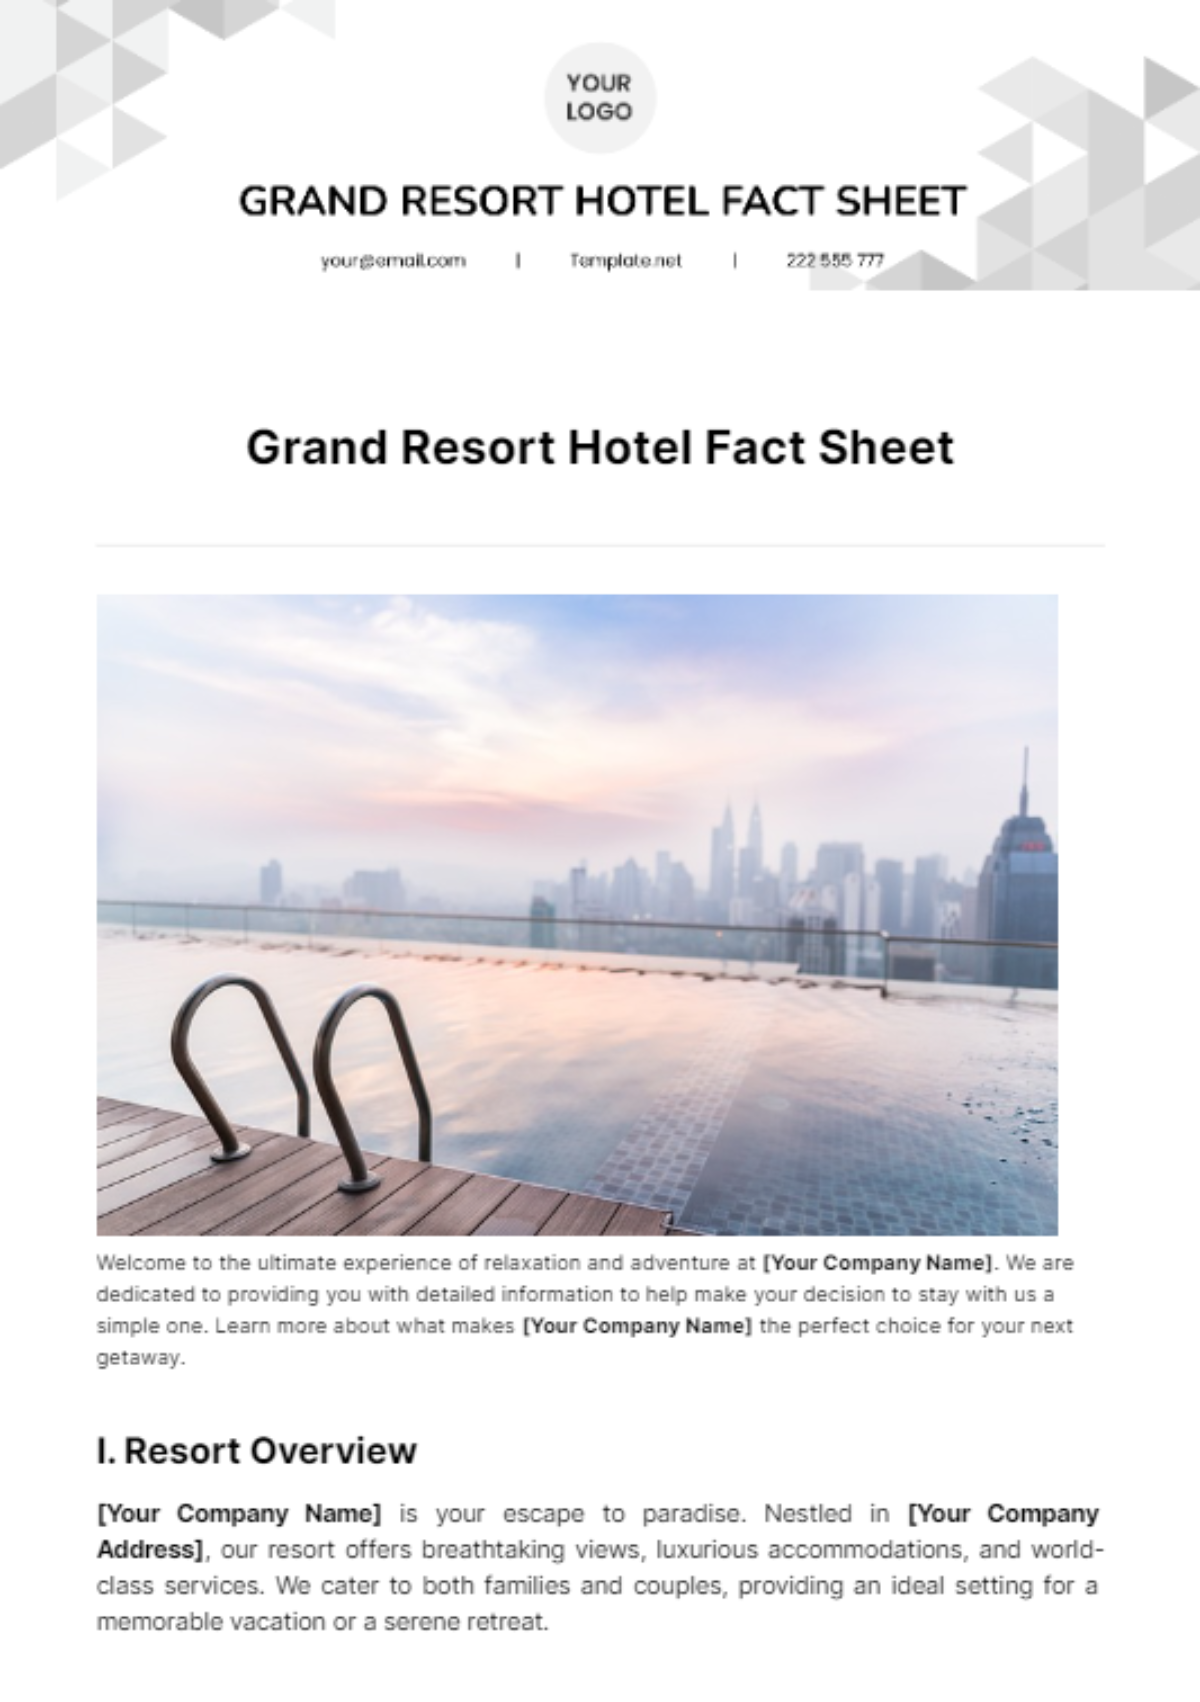 Grand Resort Hotel Fact Sheet Template